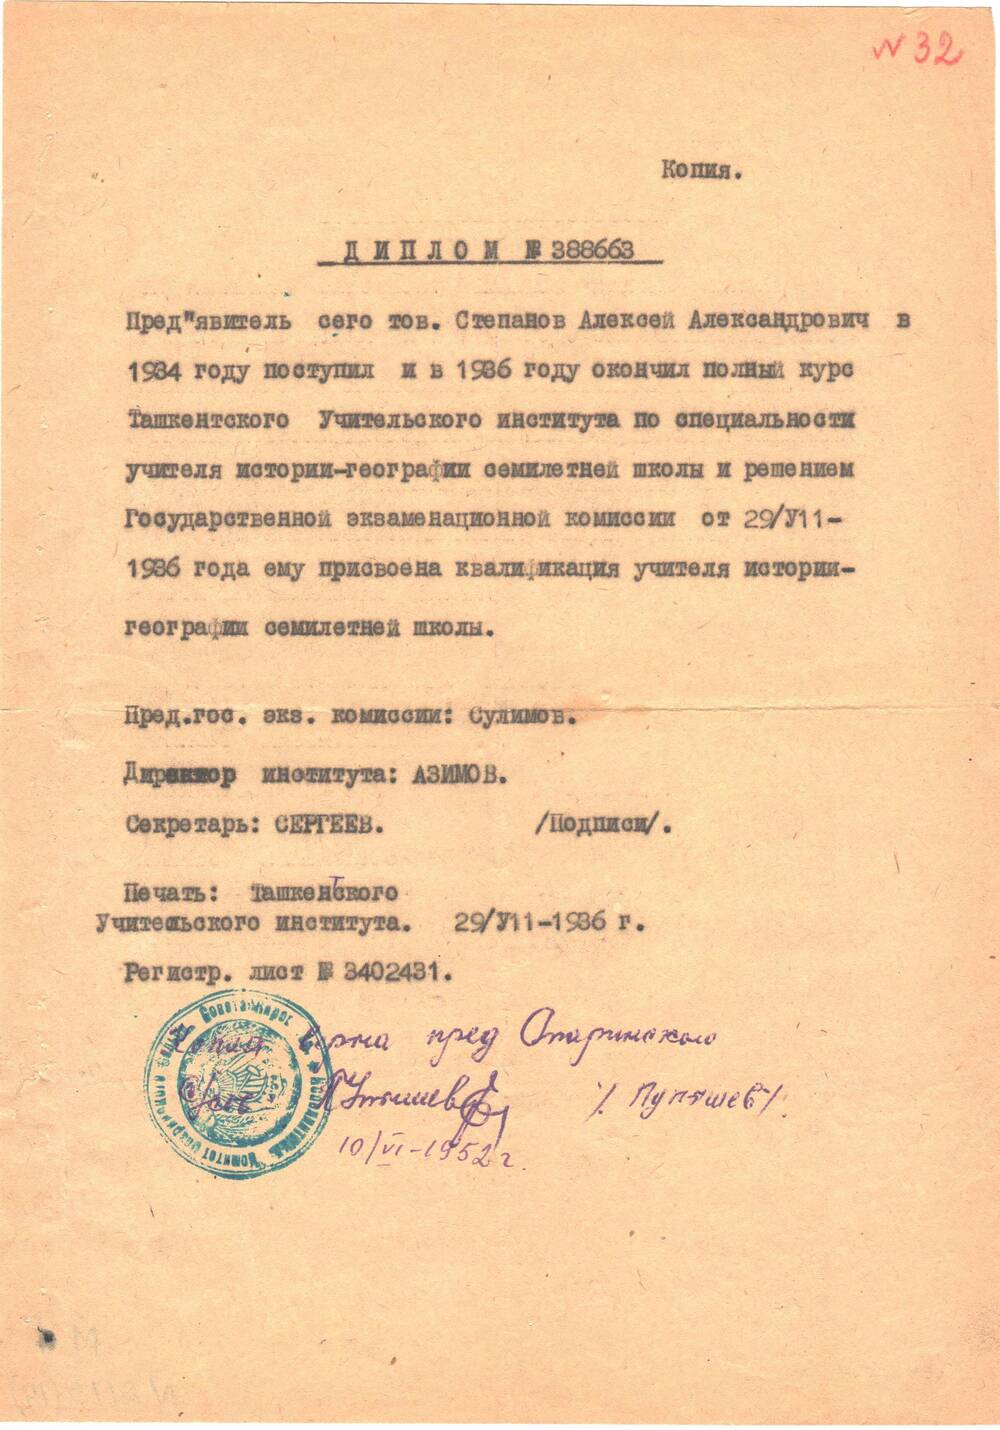 Диплом №388663(копия) Степанову Алексею Александровичу в том, что он поступил в 1934 году и окончил в 1936 году полный курс Ташкенсткого Учительского института по специальности учитель- географии